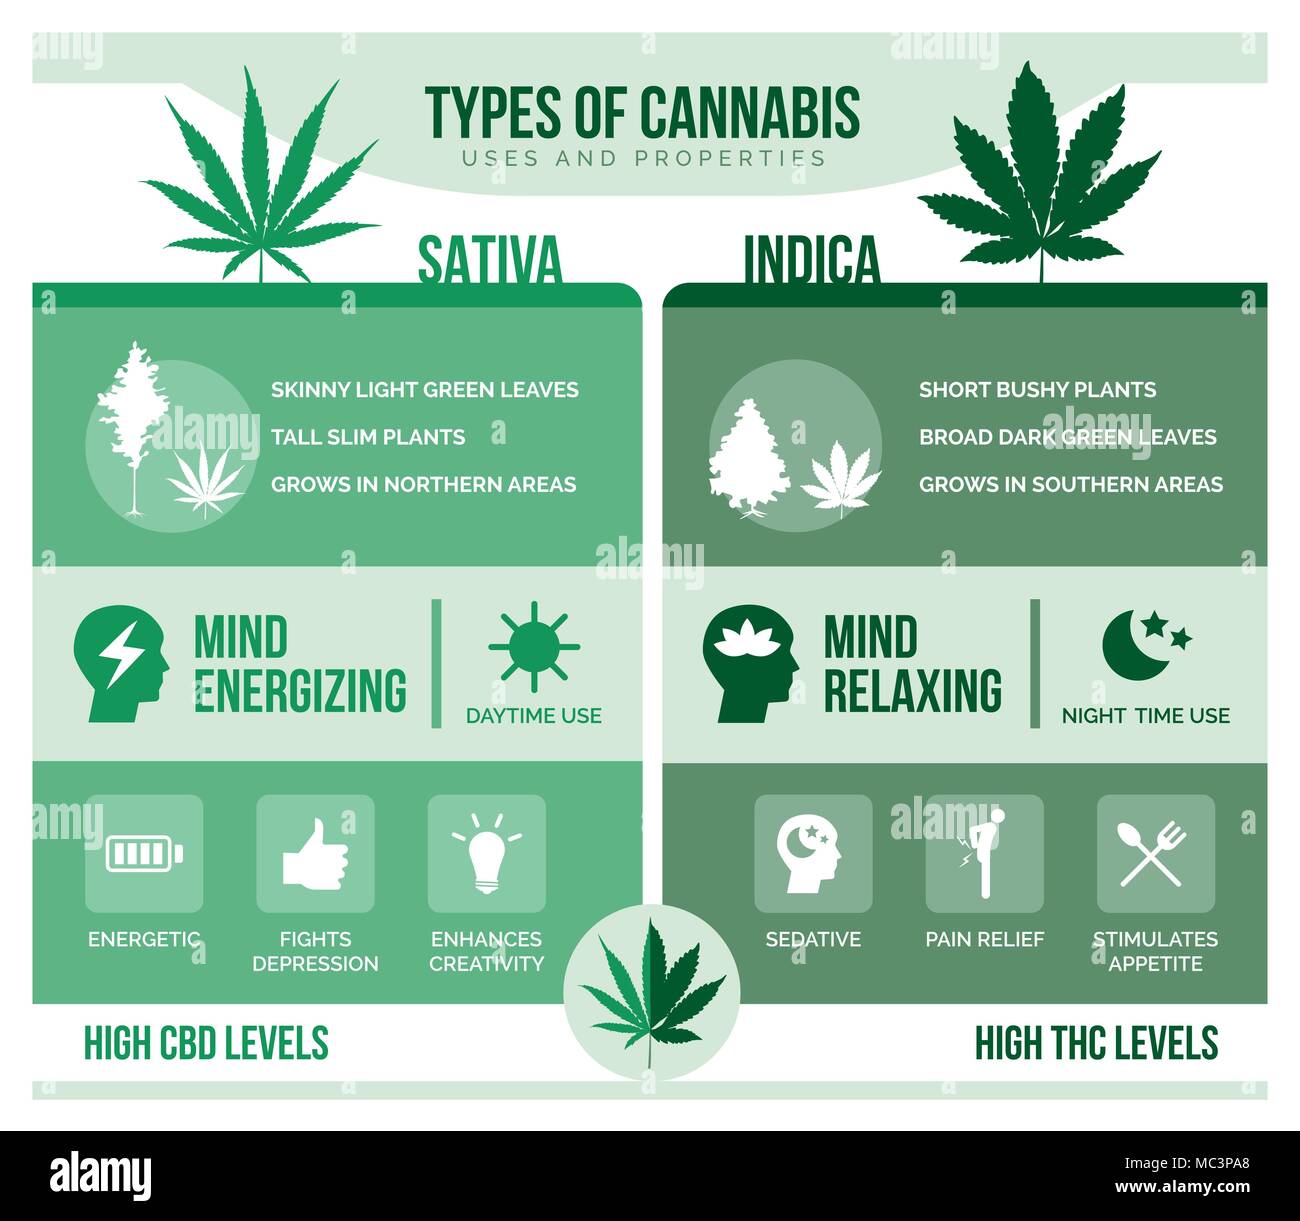 La Cannabis sativa e cannabis indica: differencies e benefici per la salute Una infografica Illustrazione Vettoriale